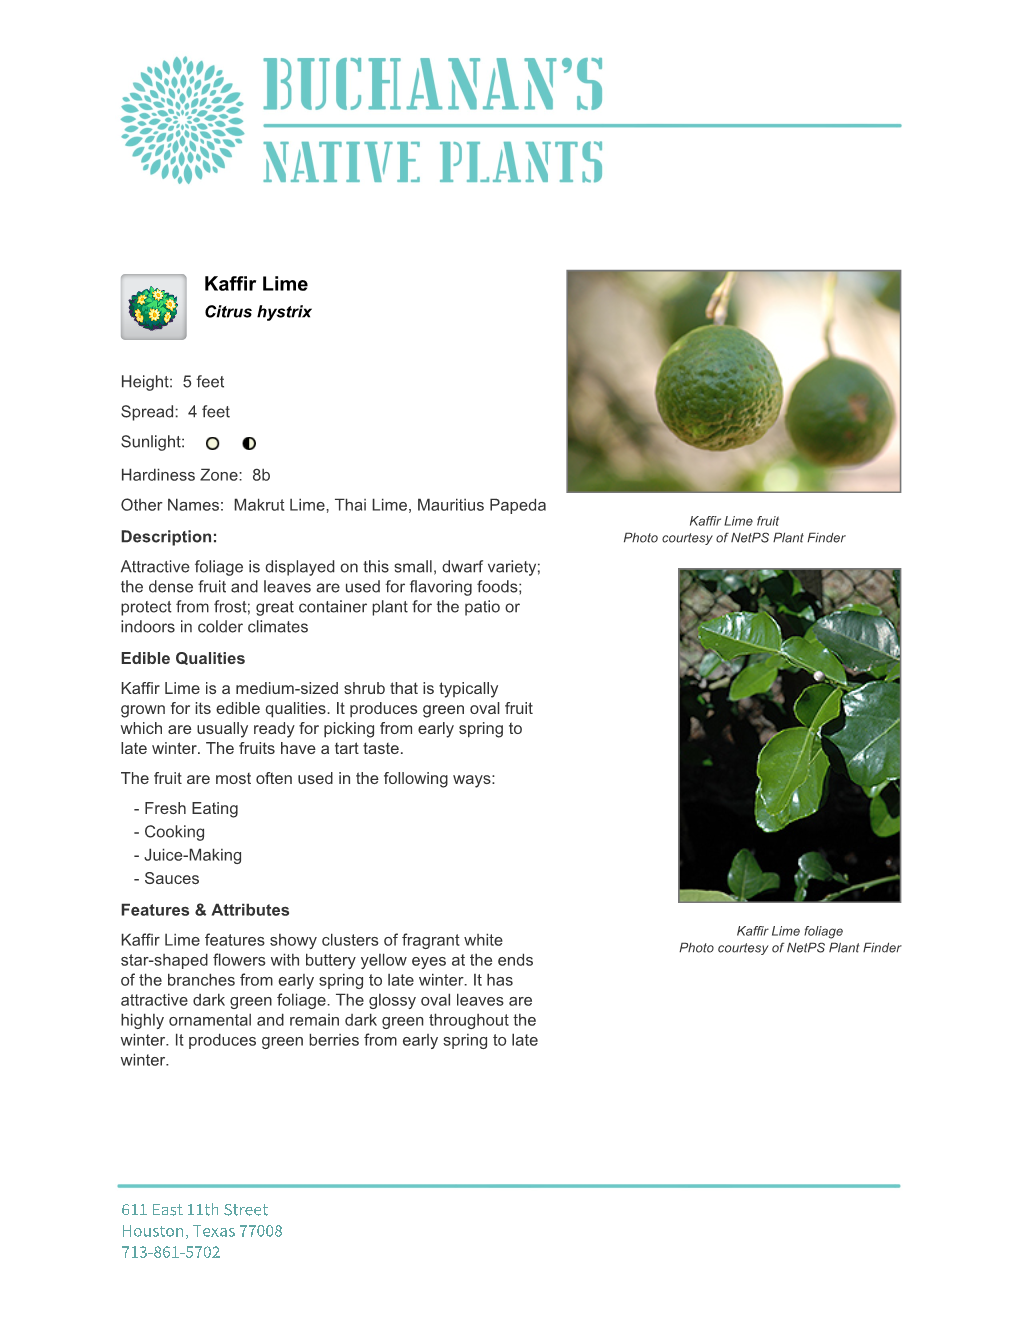 Buchanan's Native Plants Kaffir Lime